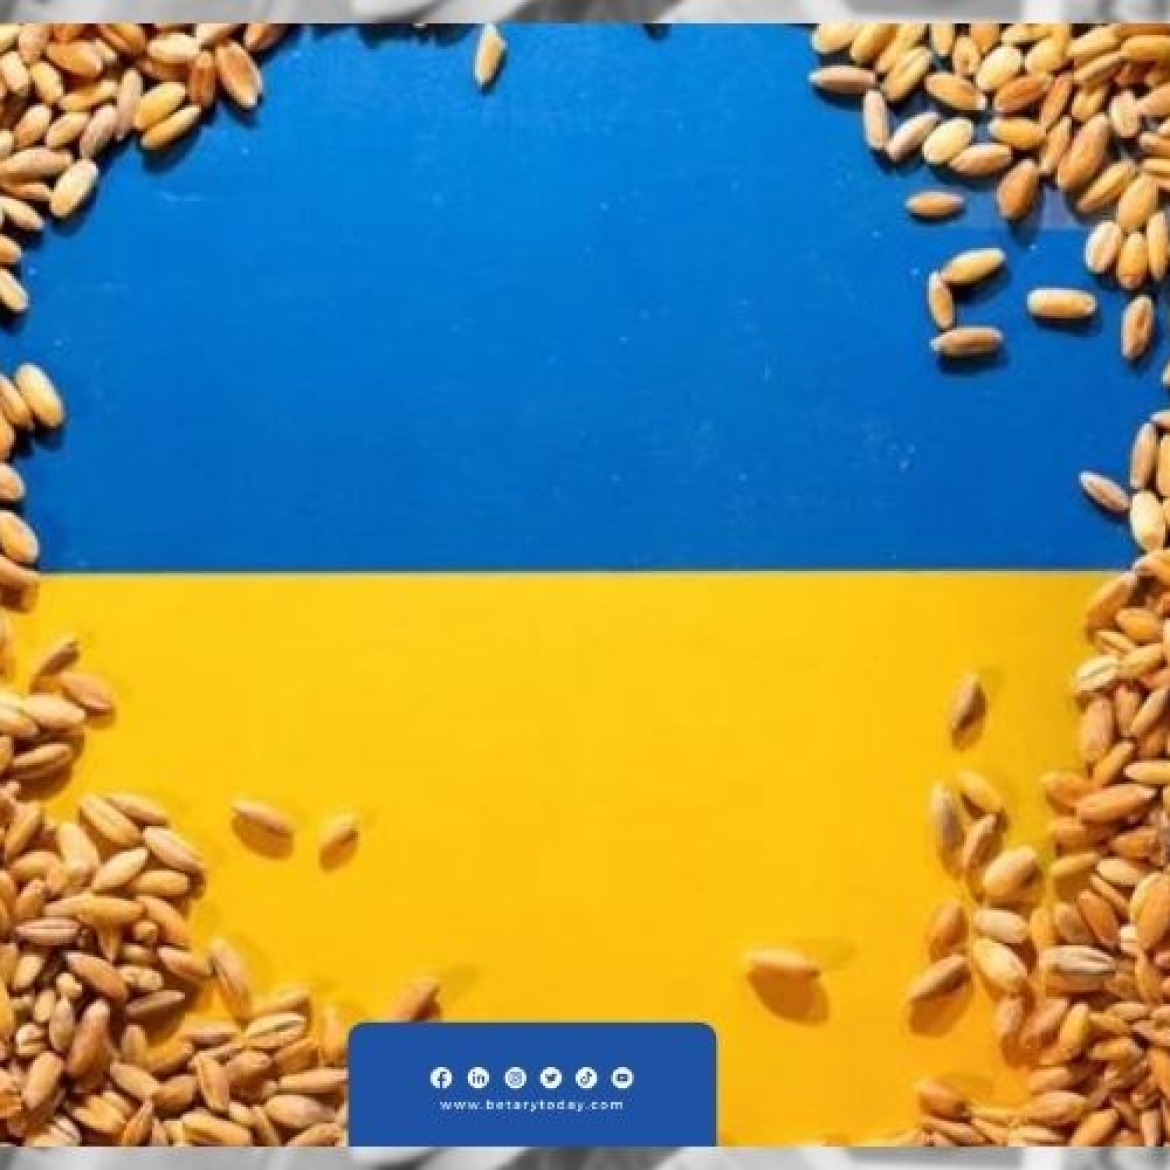 ليتوانيا تتبنى ممر جديد لعبور الحبوب الأوكرانية عبر موانئ البلطيق